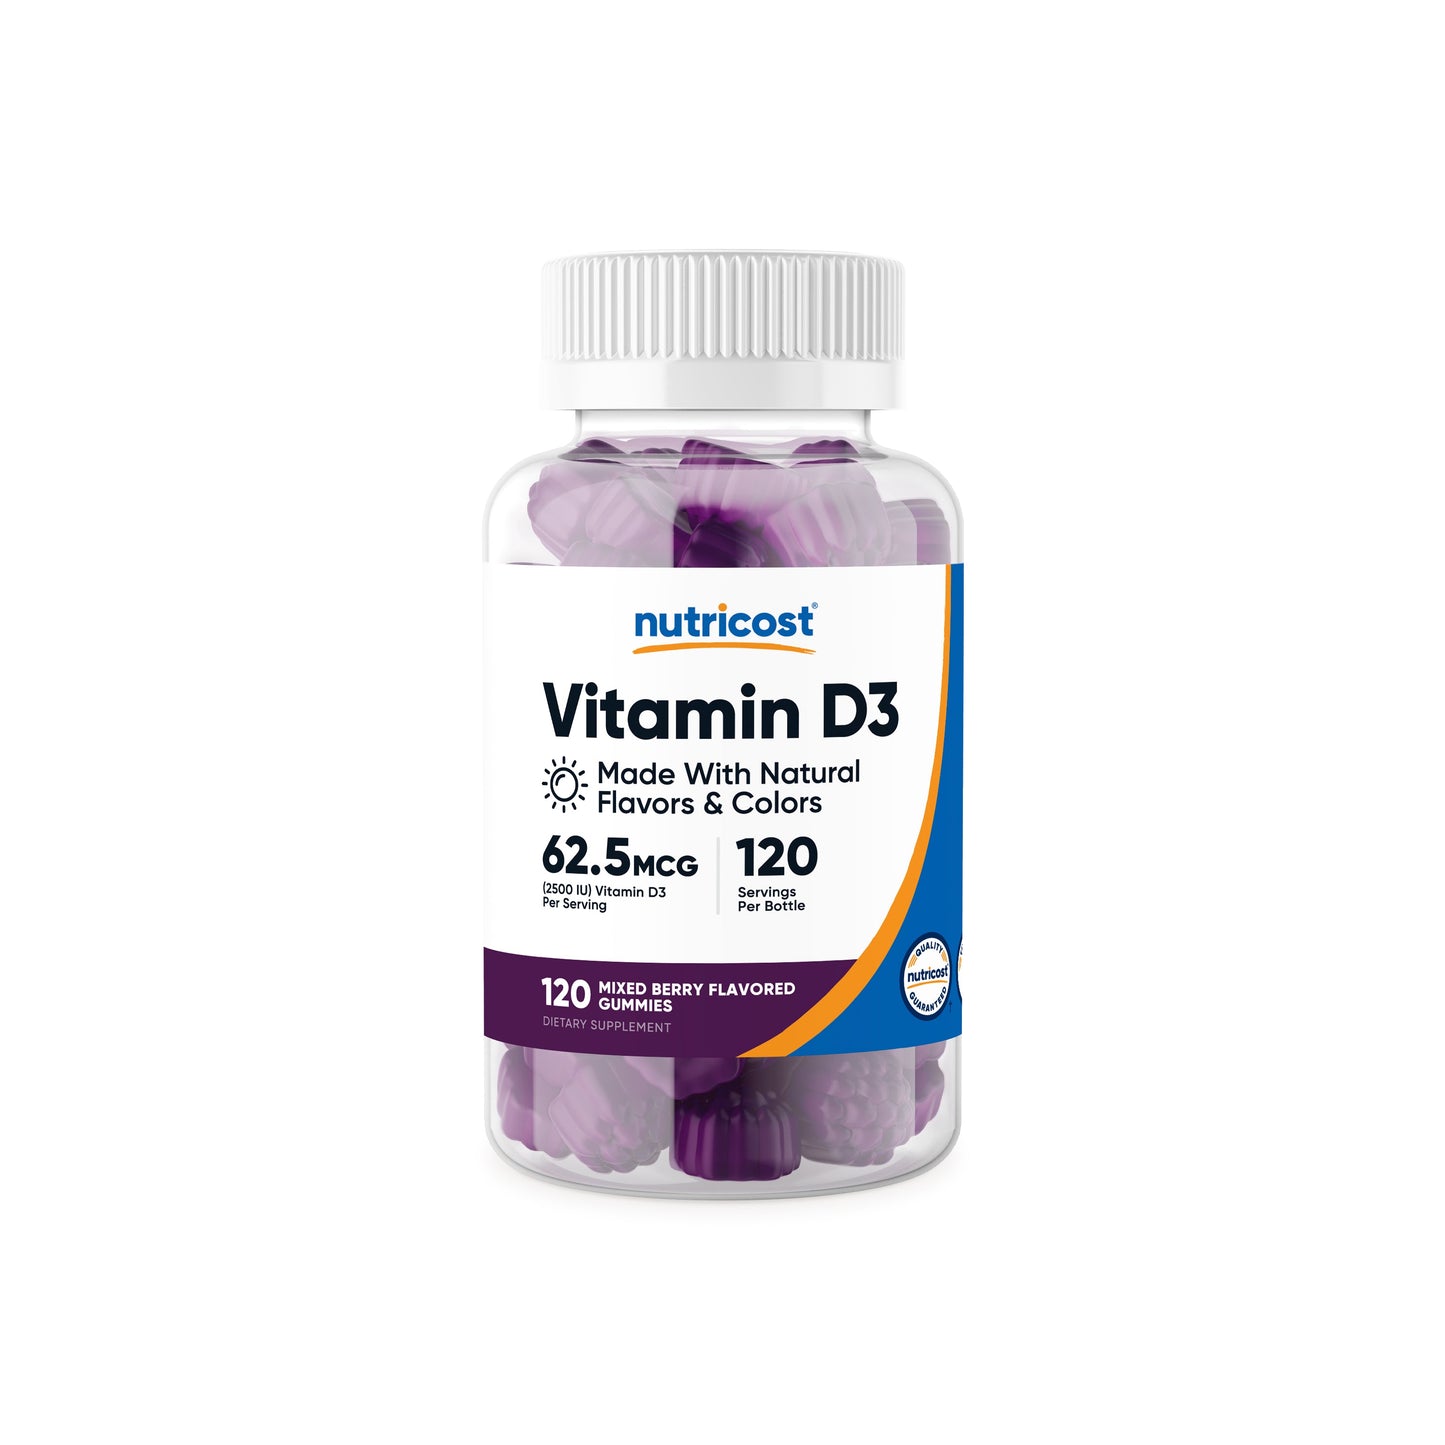 Nutricost Vitamin D3 Gummies (2,500iu)